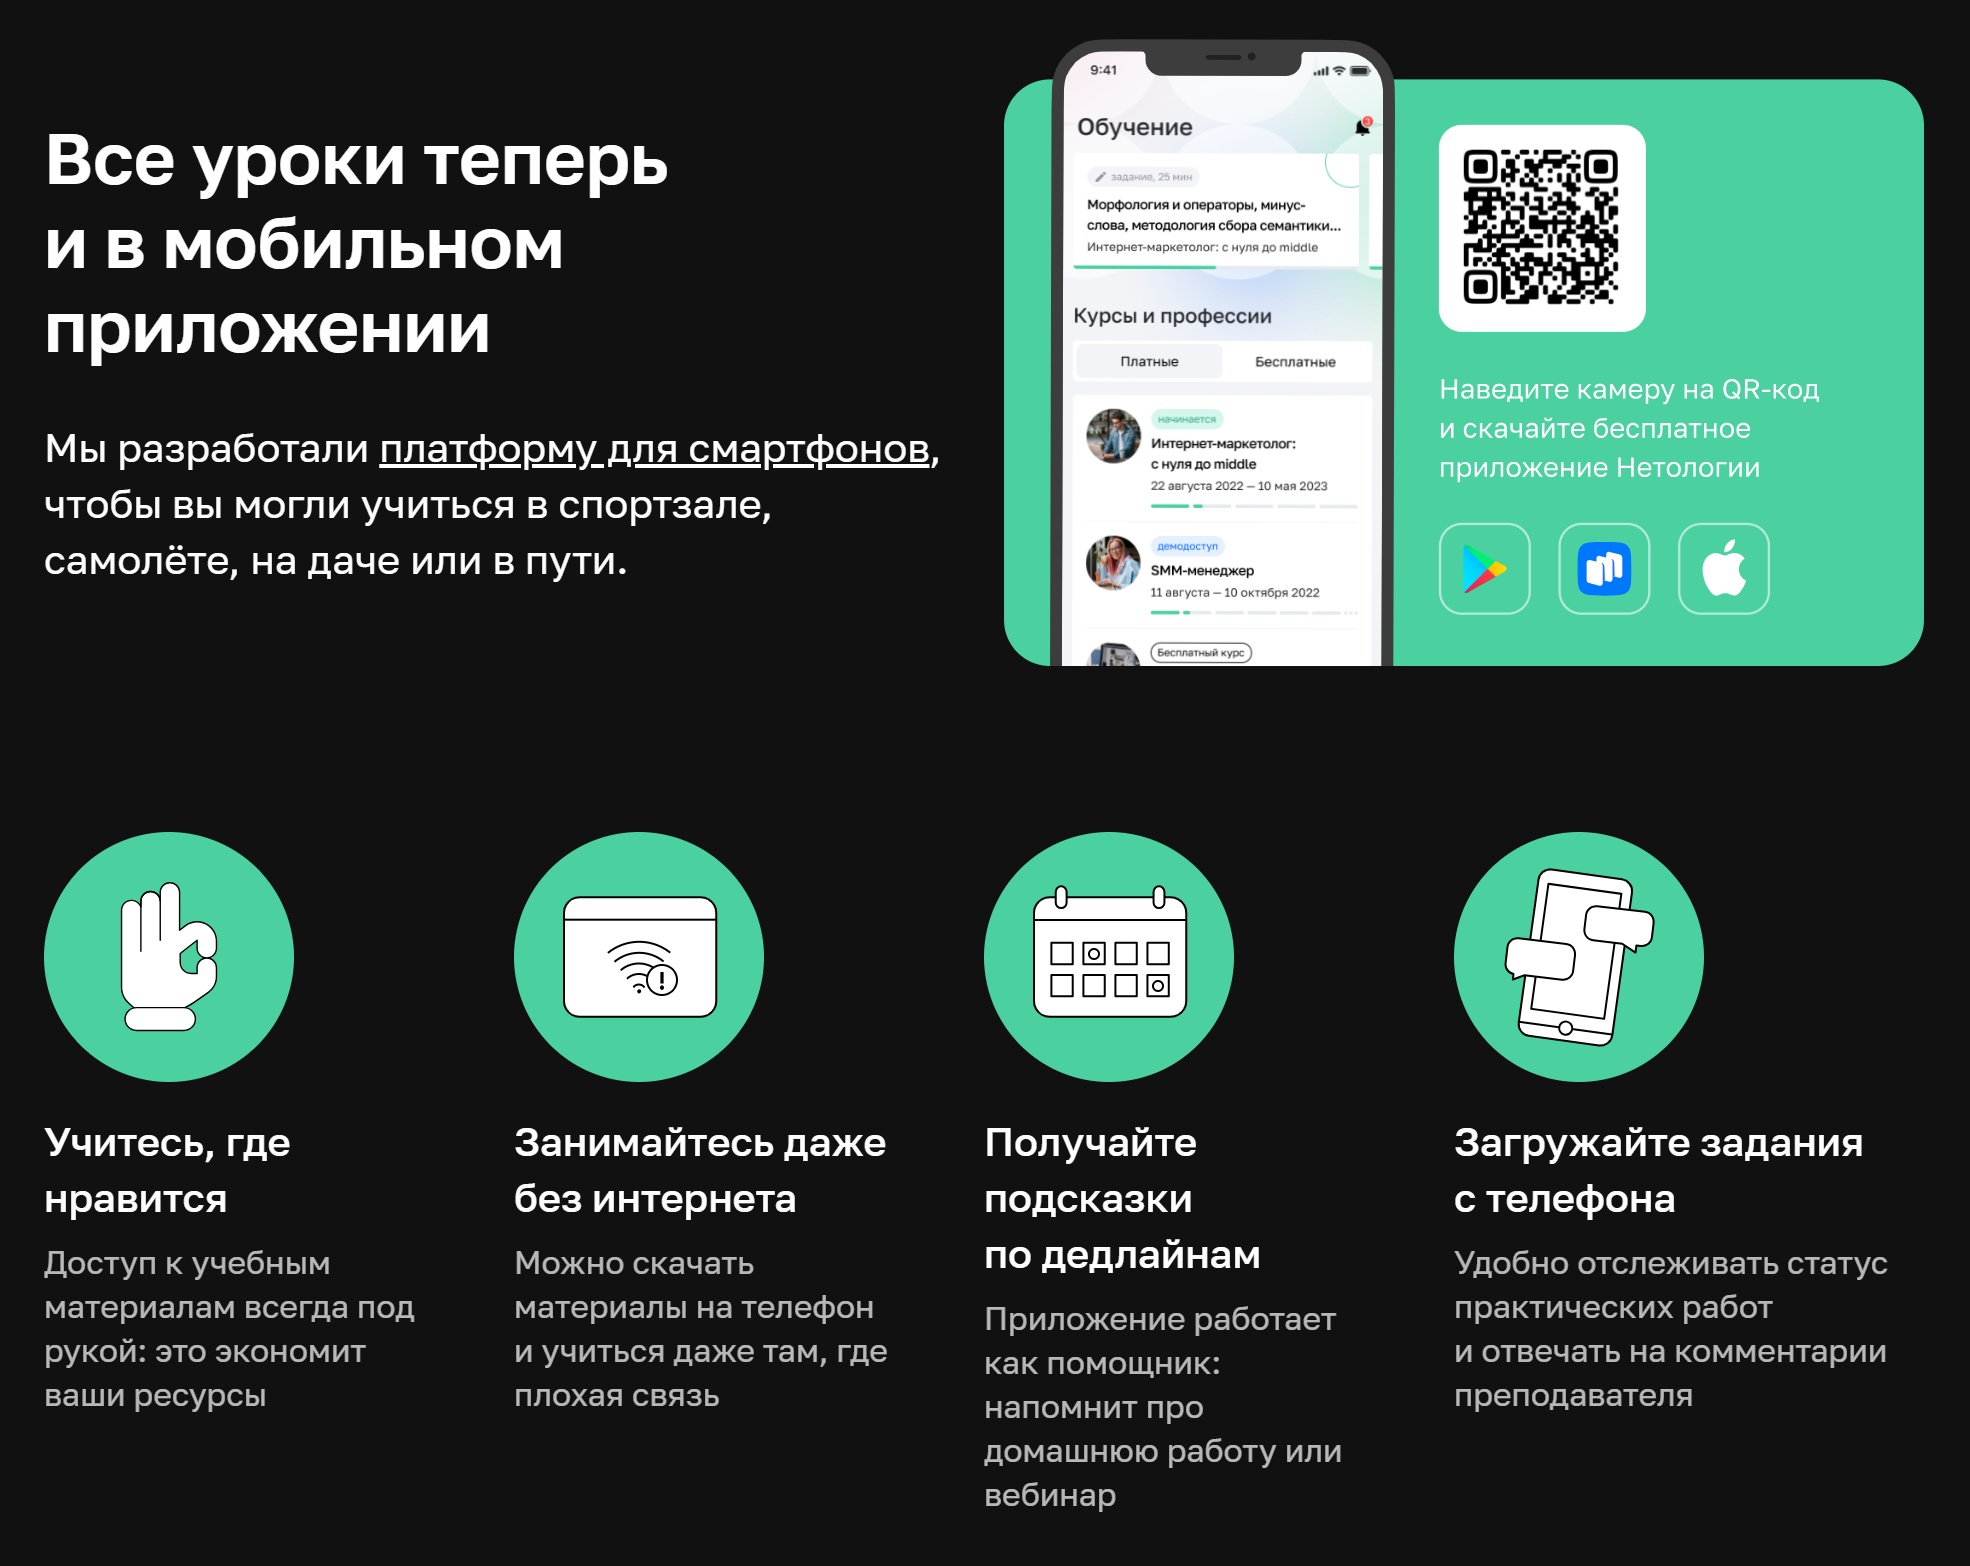 У «Нетологии» есть и свое мобильное приложение. Источник: netology.ru